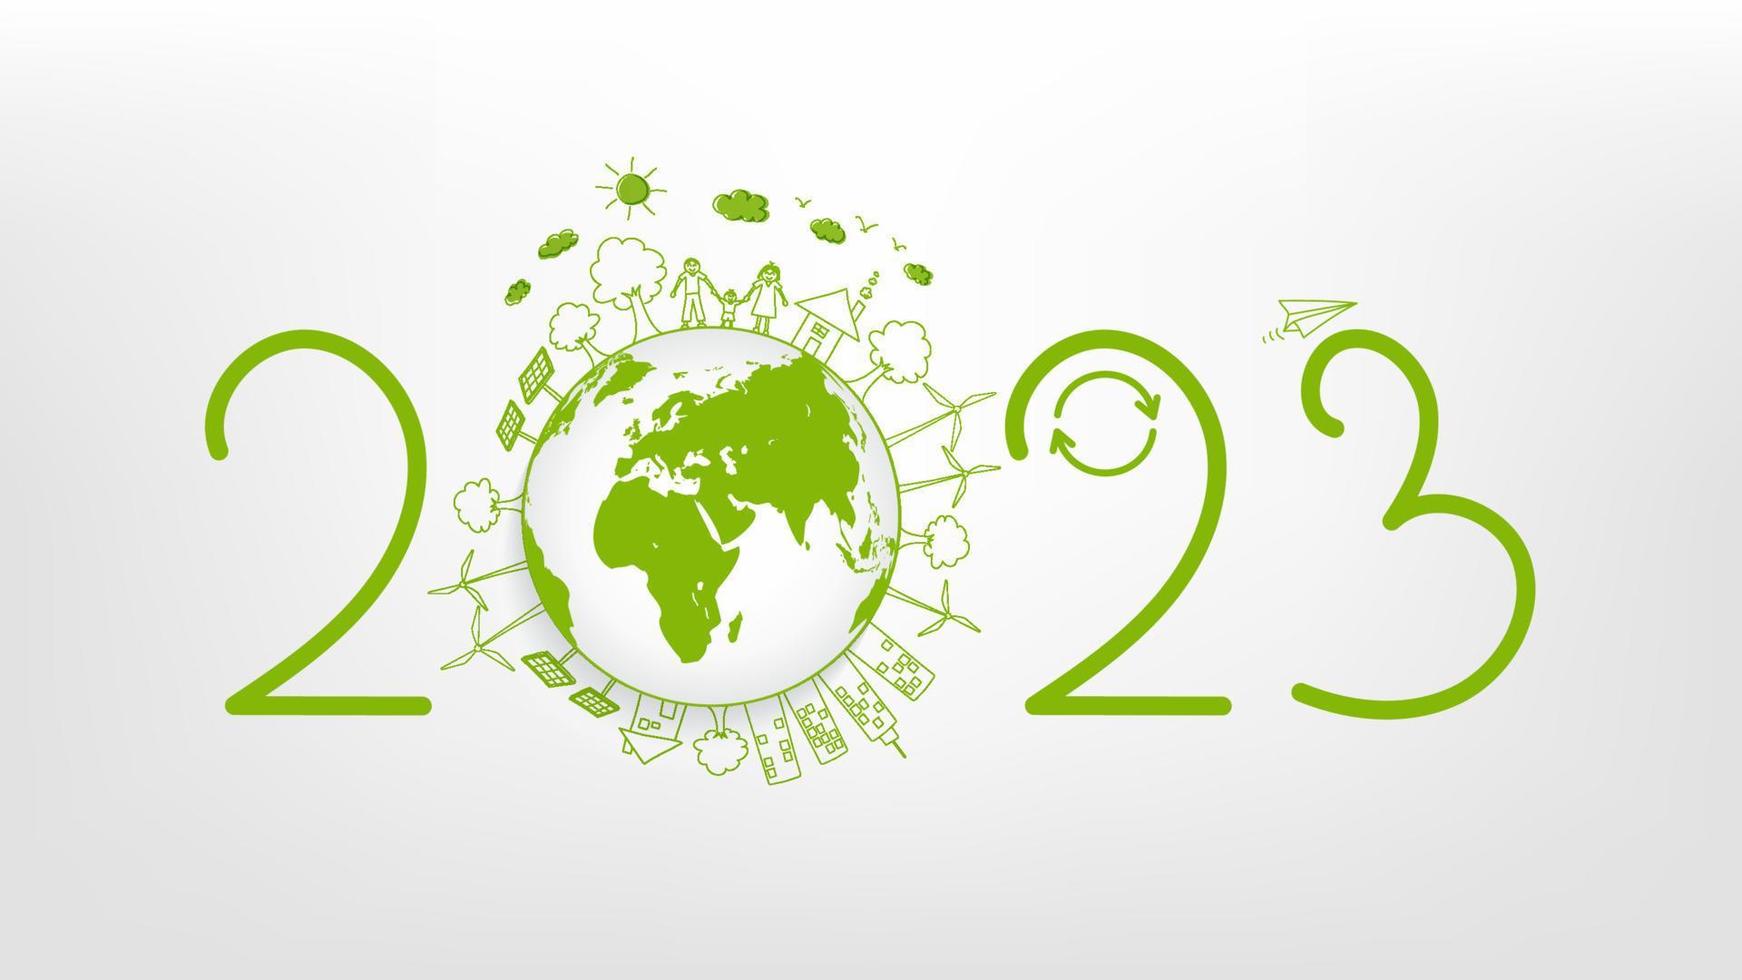 nieuw jaar 2023 eco vriendelijk, duurzaamheid planning concept en wereld milieu met tekening pictogrammen, vector illustratie